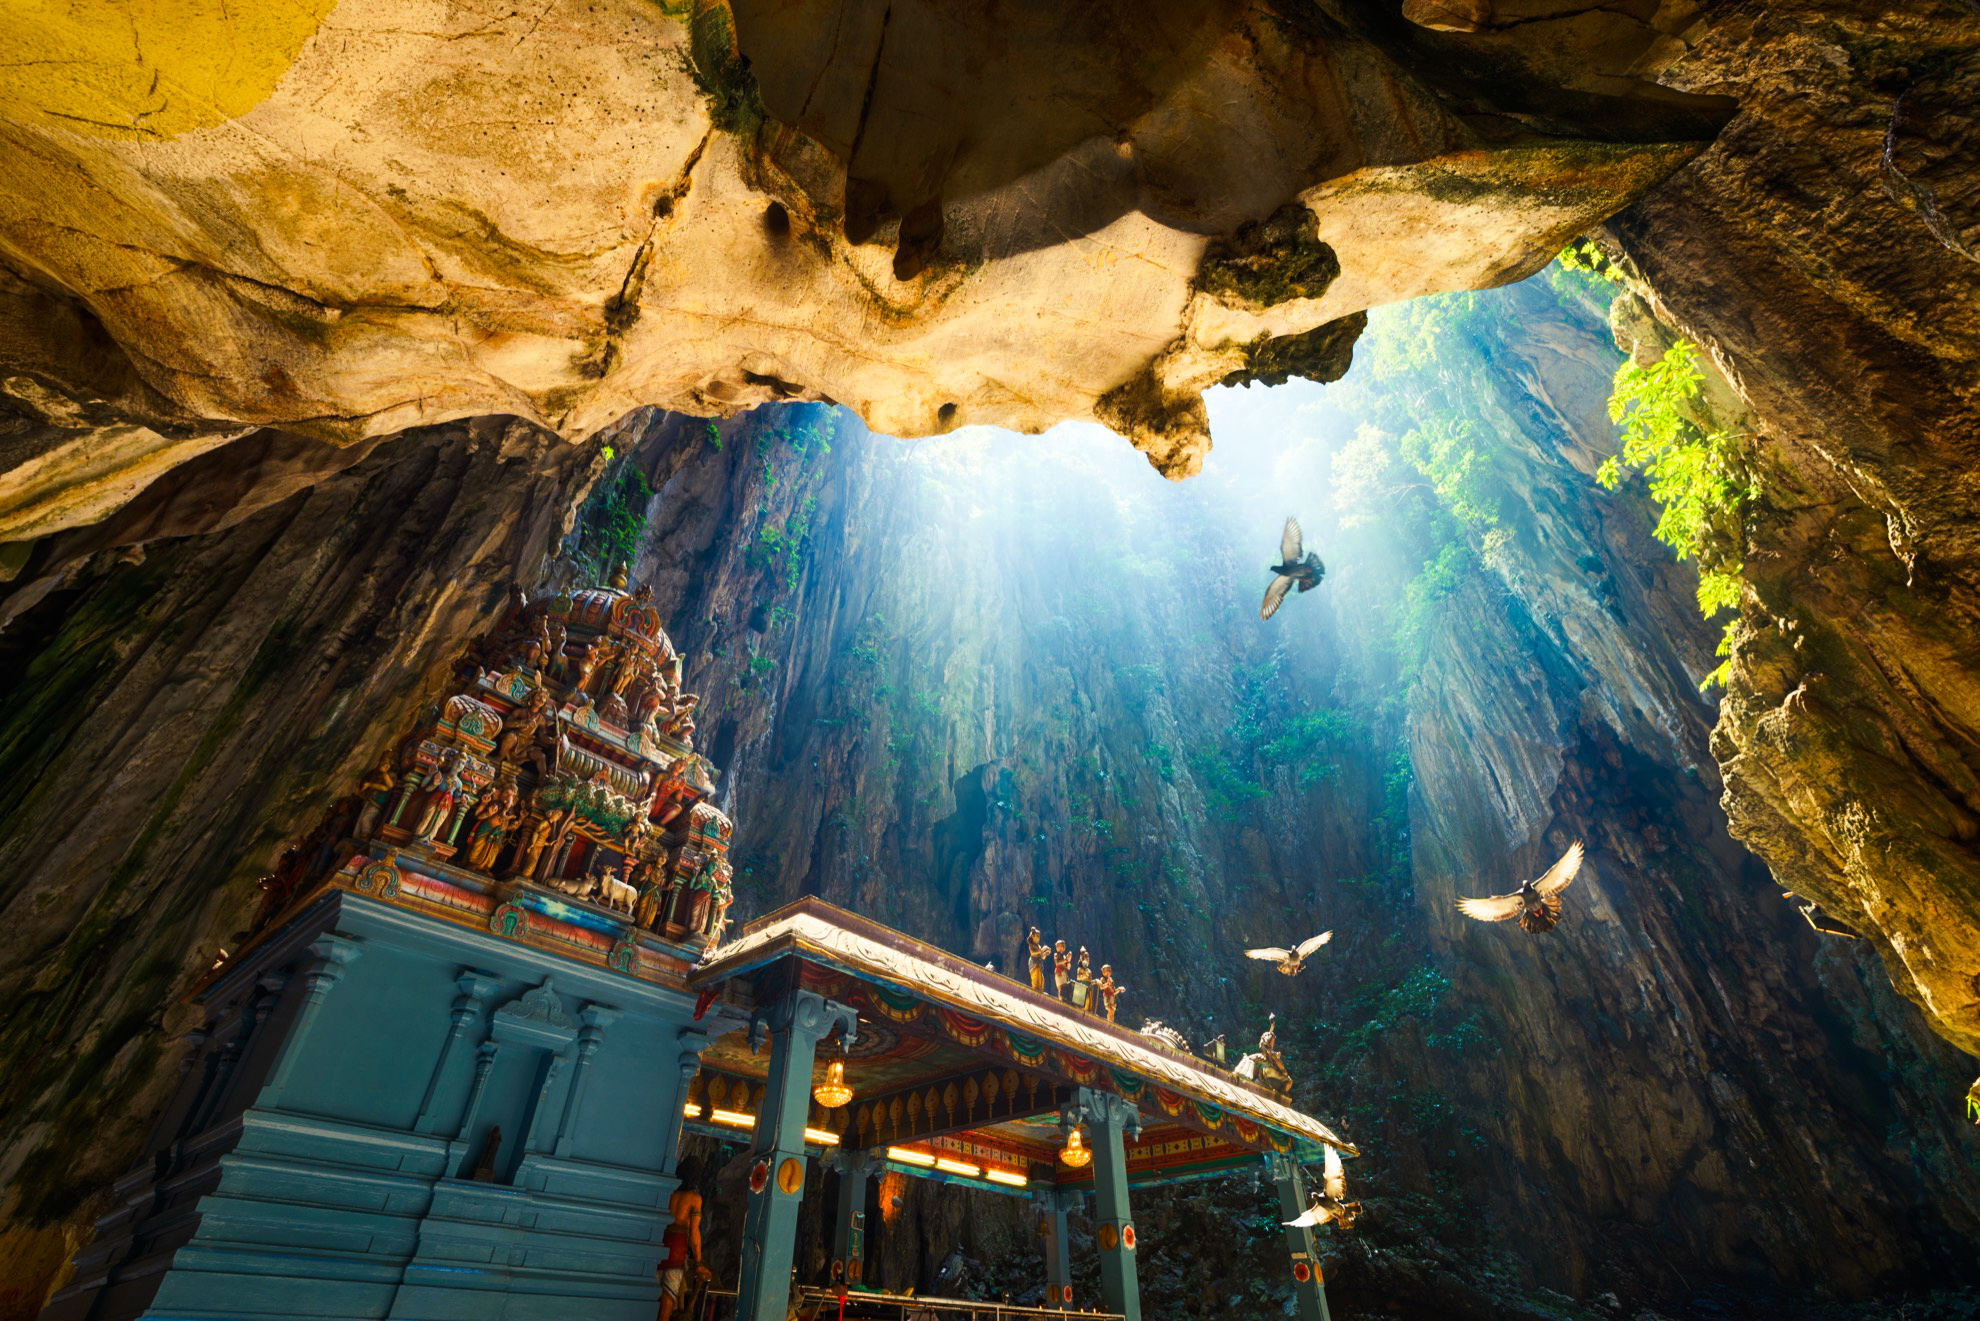 Las cuevas de Batu en Malasia podrían ser el lugar más colorido que hayas visitado - 11